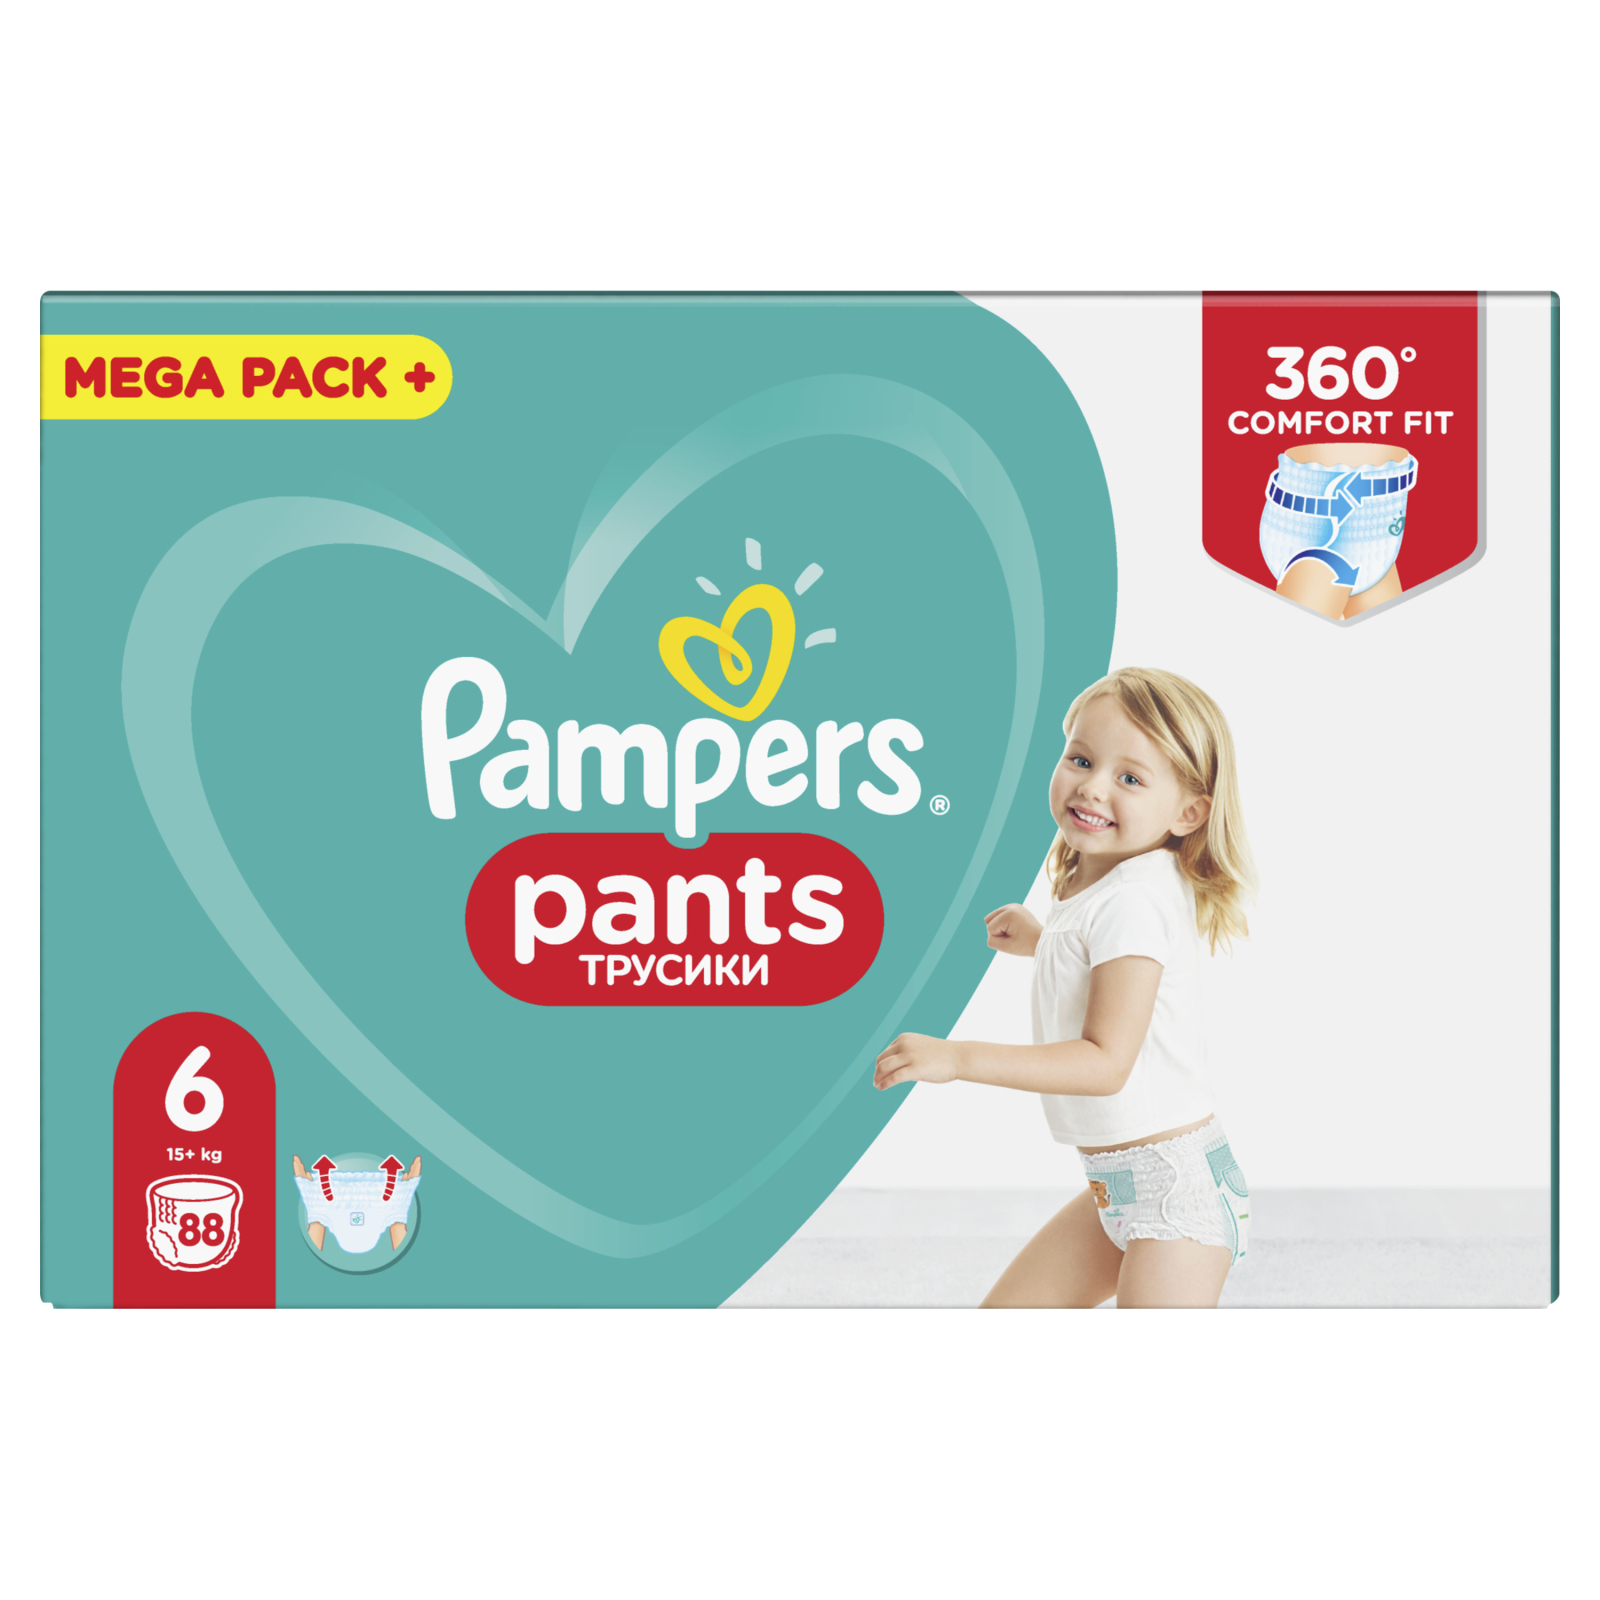 Подгузники Pampers трусики Pants Extra Large Размер 6 (15+ кг), 88 шт (4015400697558) изображение 2